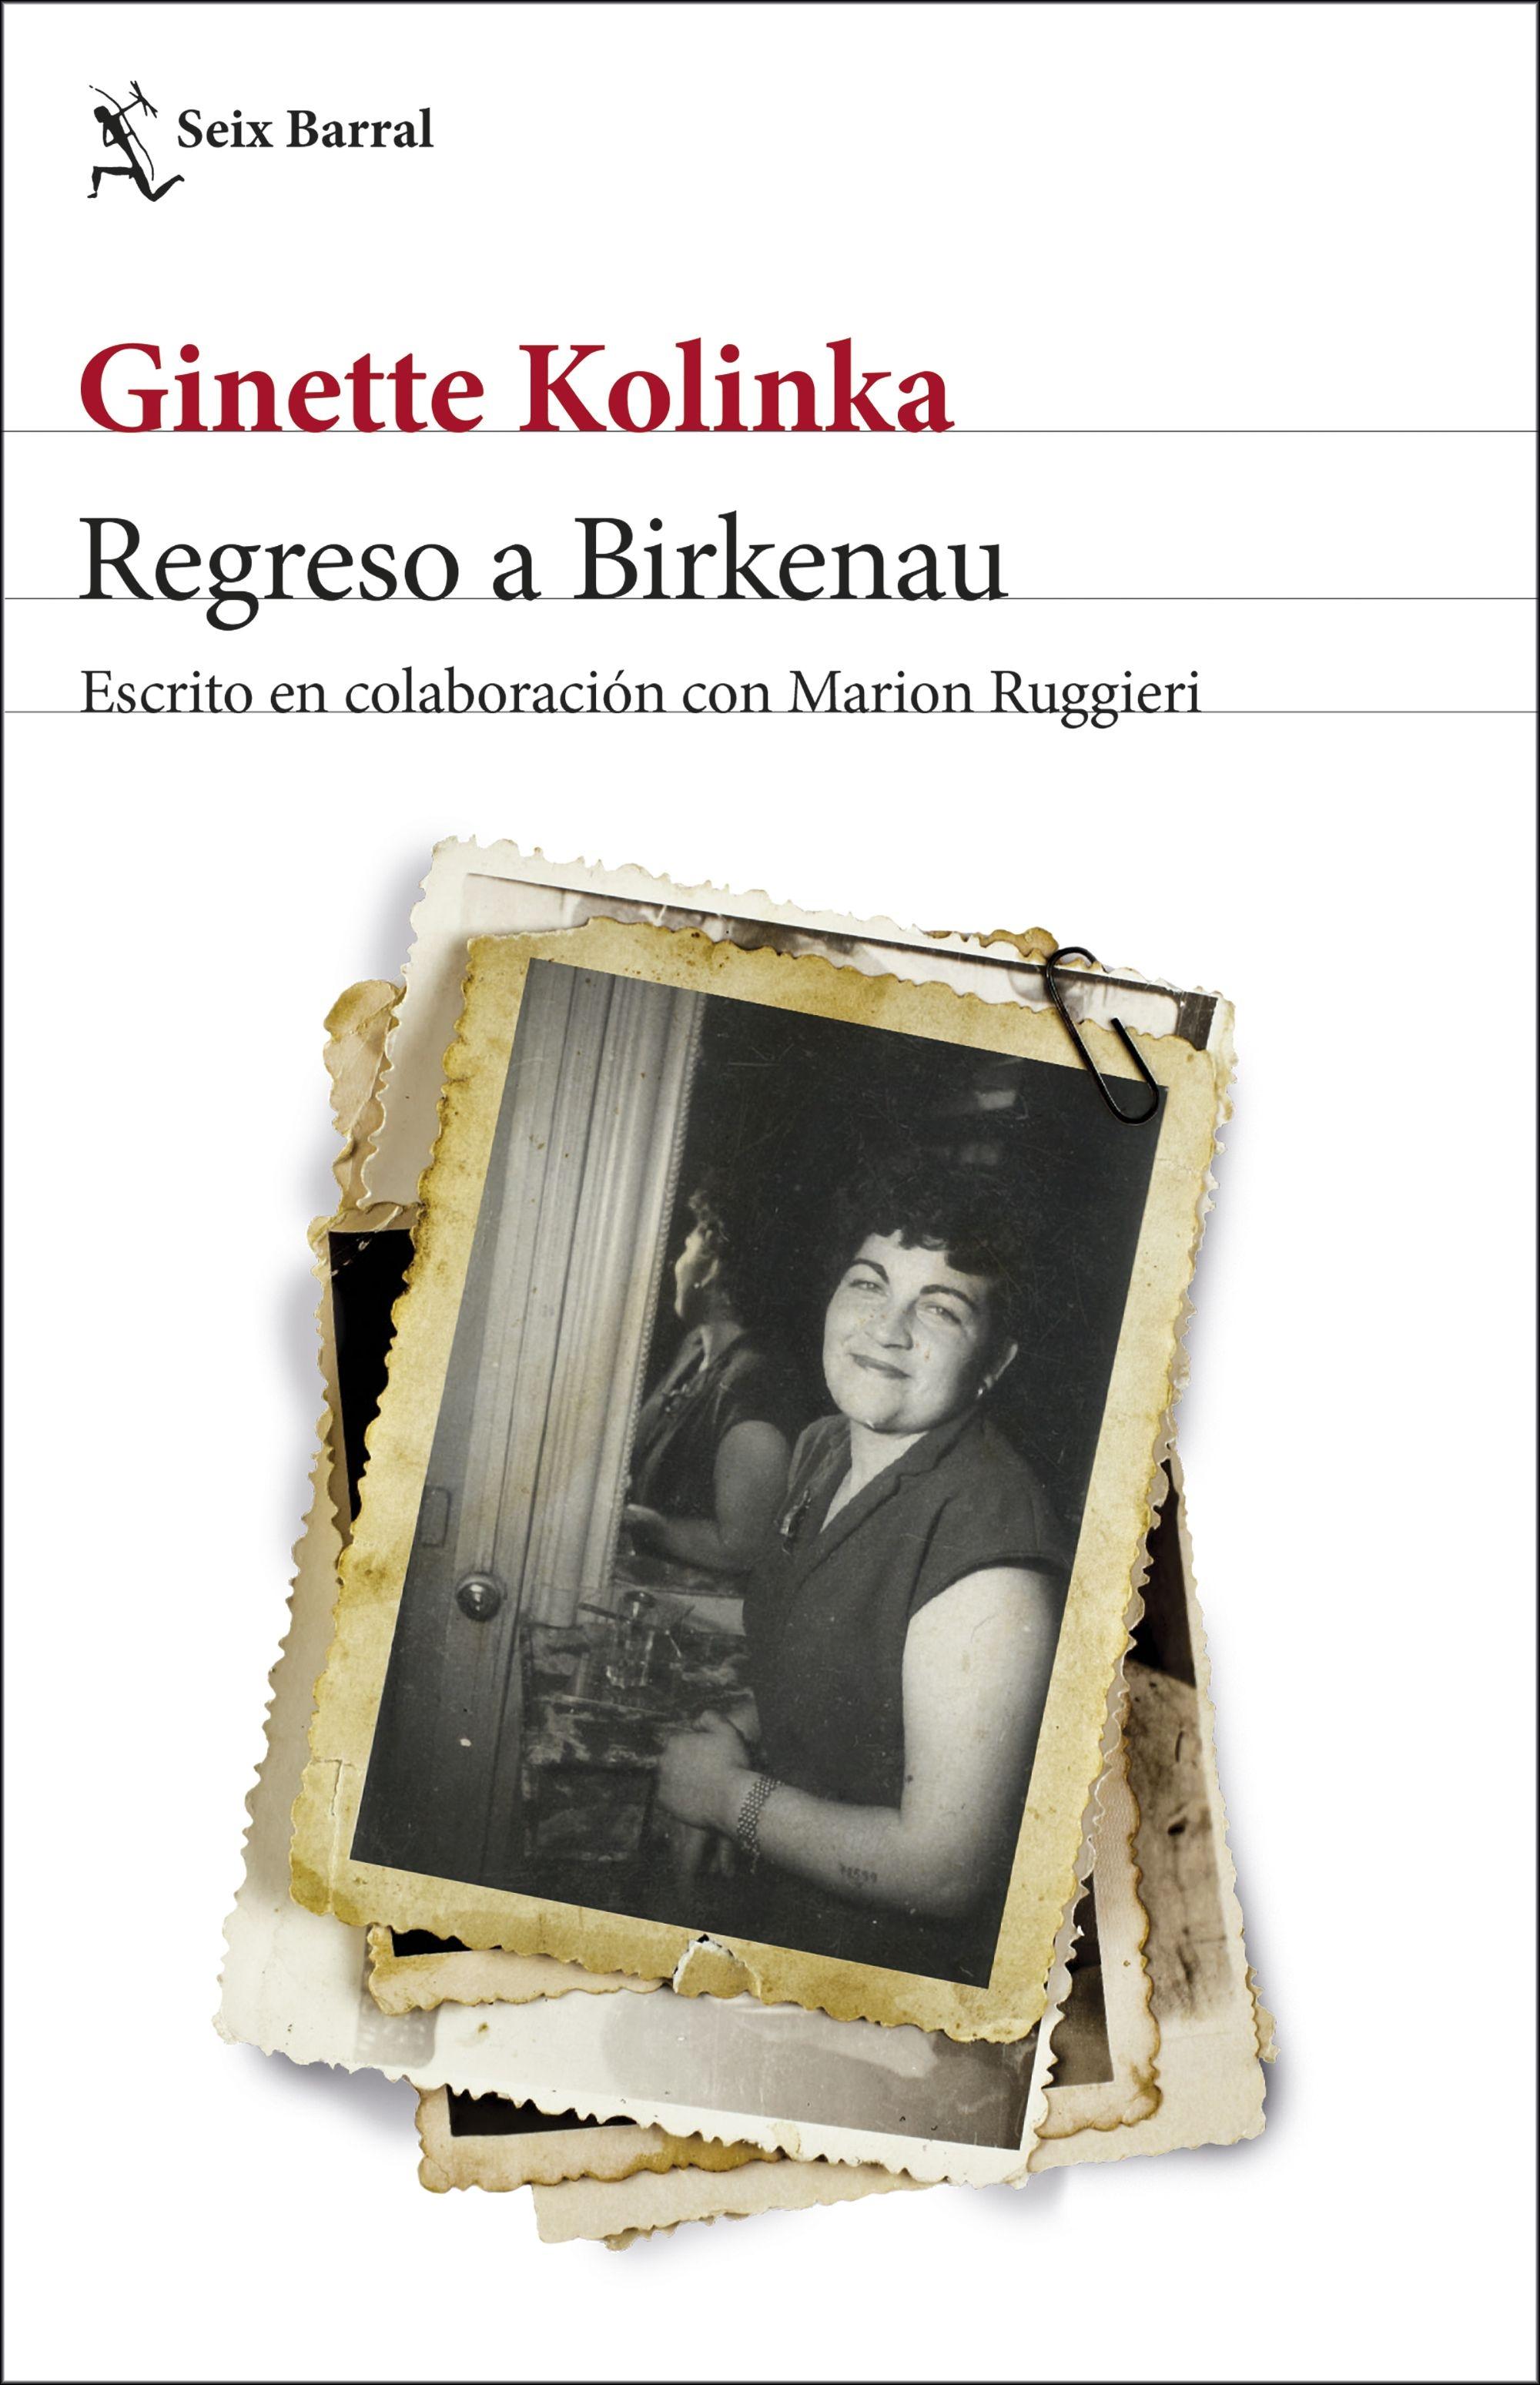 Regreso a Birkenau "Escrito en colaboración con Marion Ruggieri". 